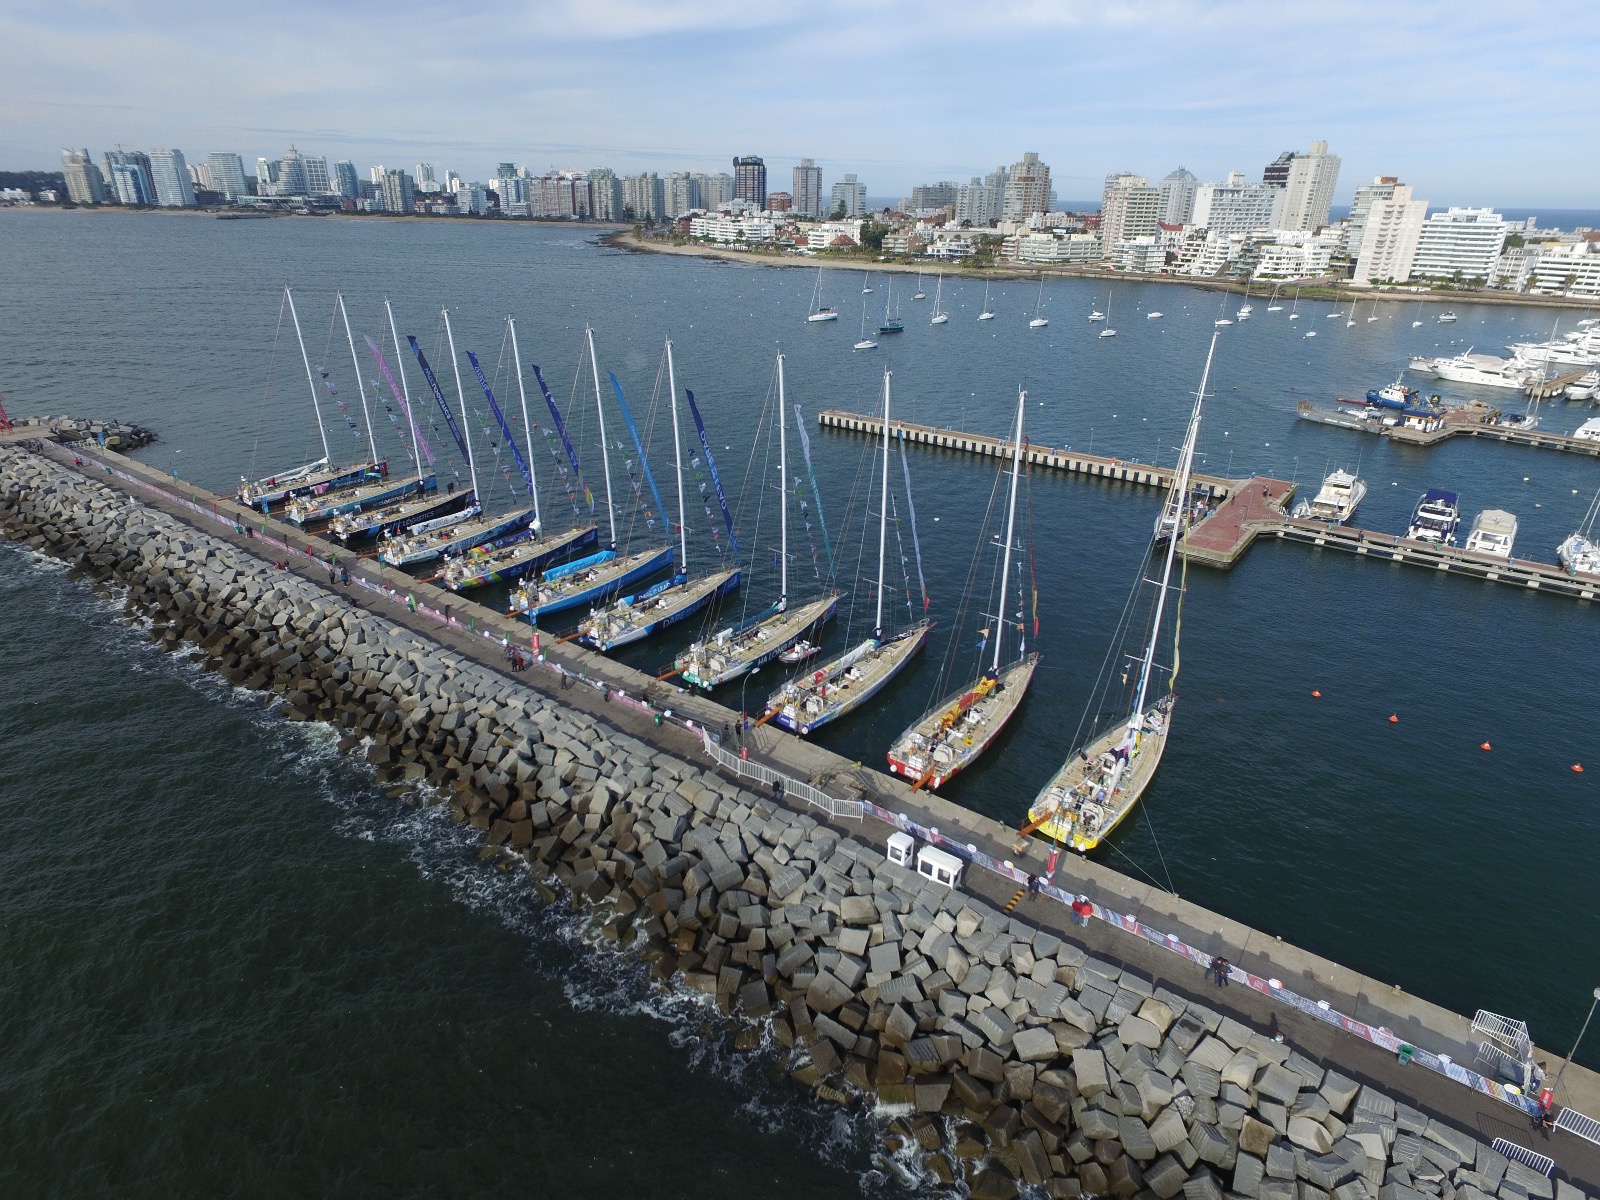 The Clipper Race fleet in the Yacht Club Punta del Este